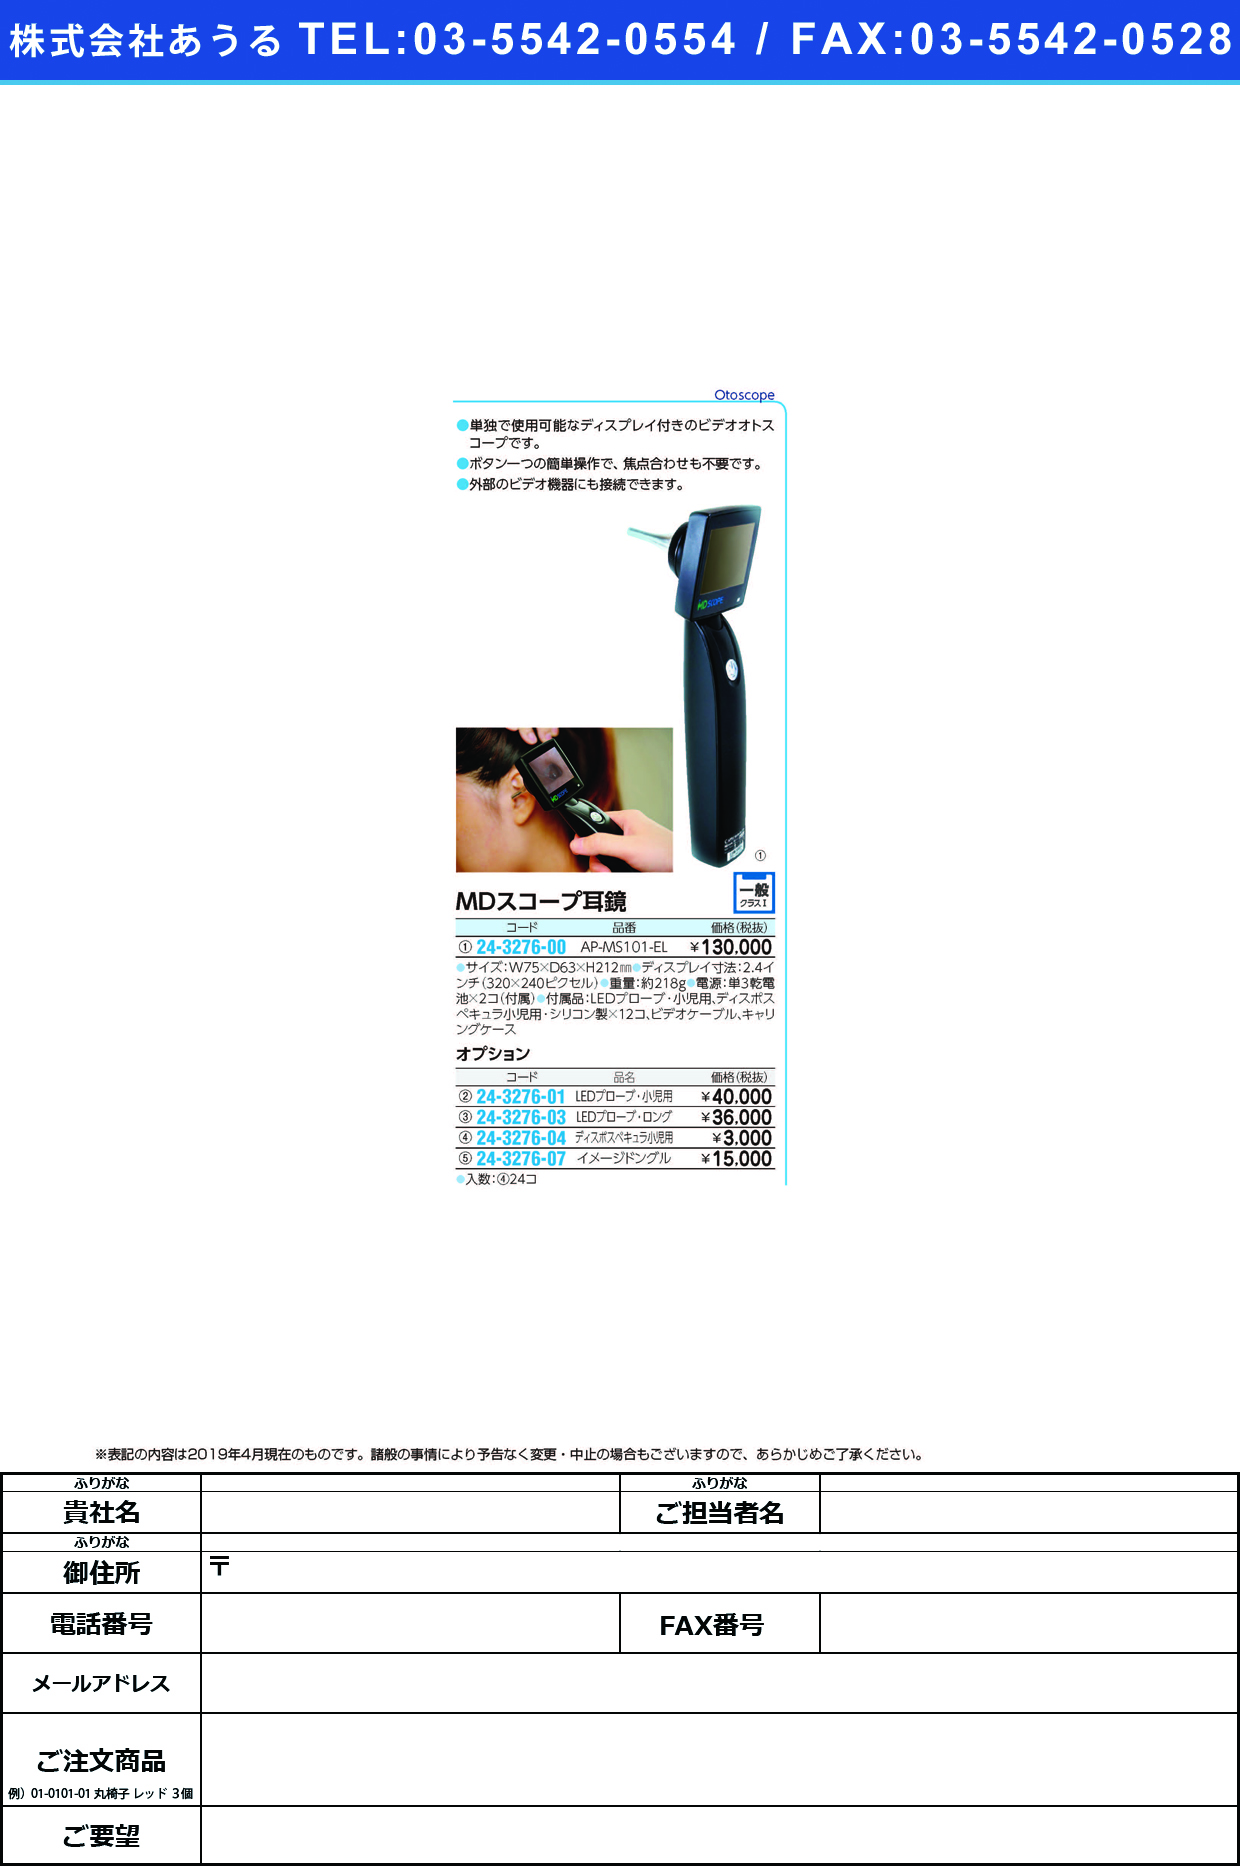 (24-3276-00)ＭＤスコープ耳鏡 AP-MS101-EL MDｽｺｰﾌﾟｼﾞｷｮｳ【1台単位】【2019年カタログ商品】